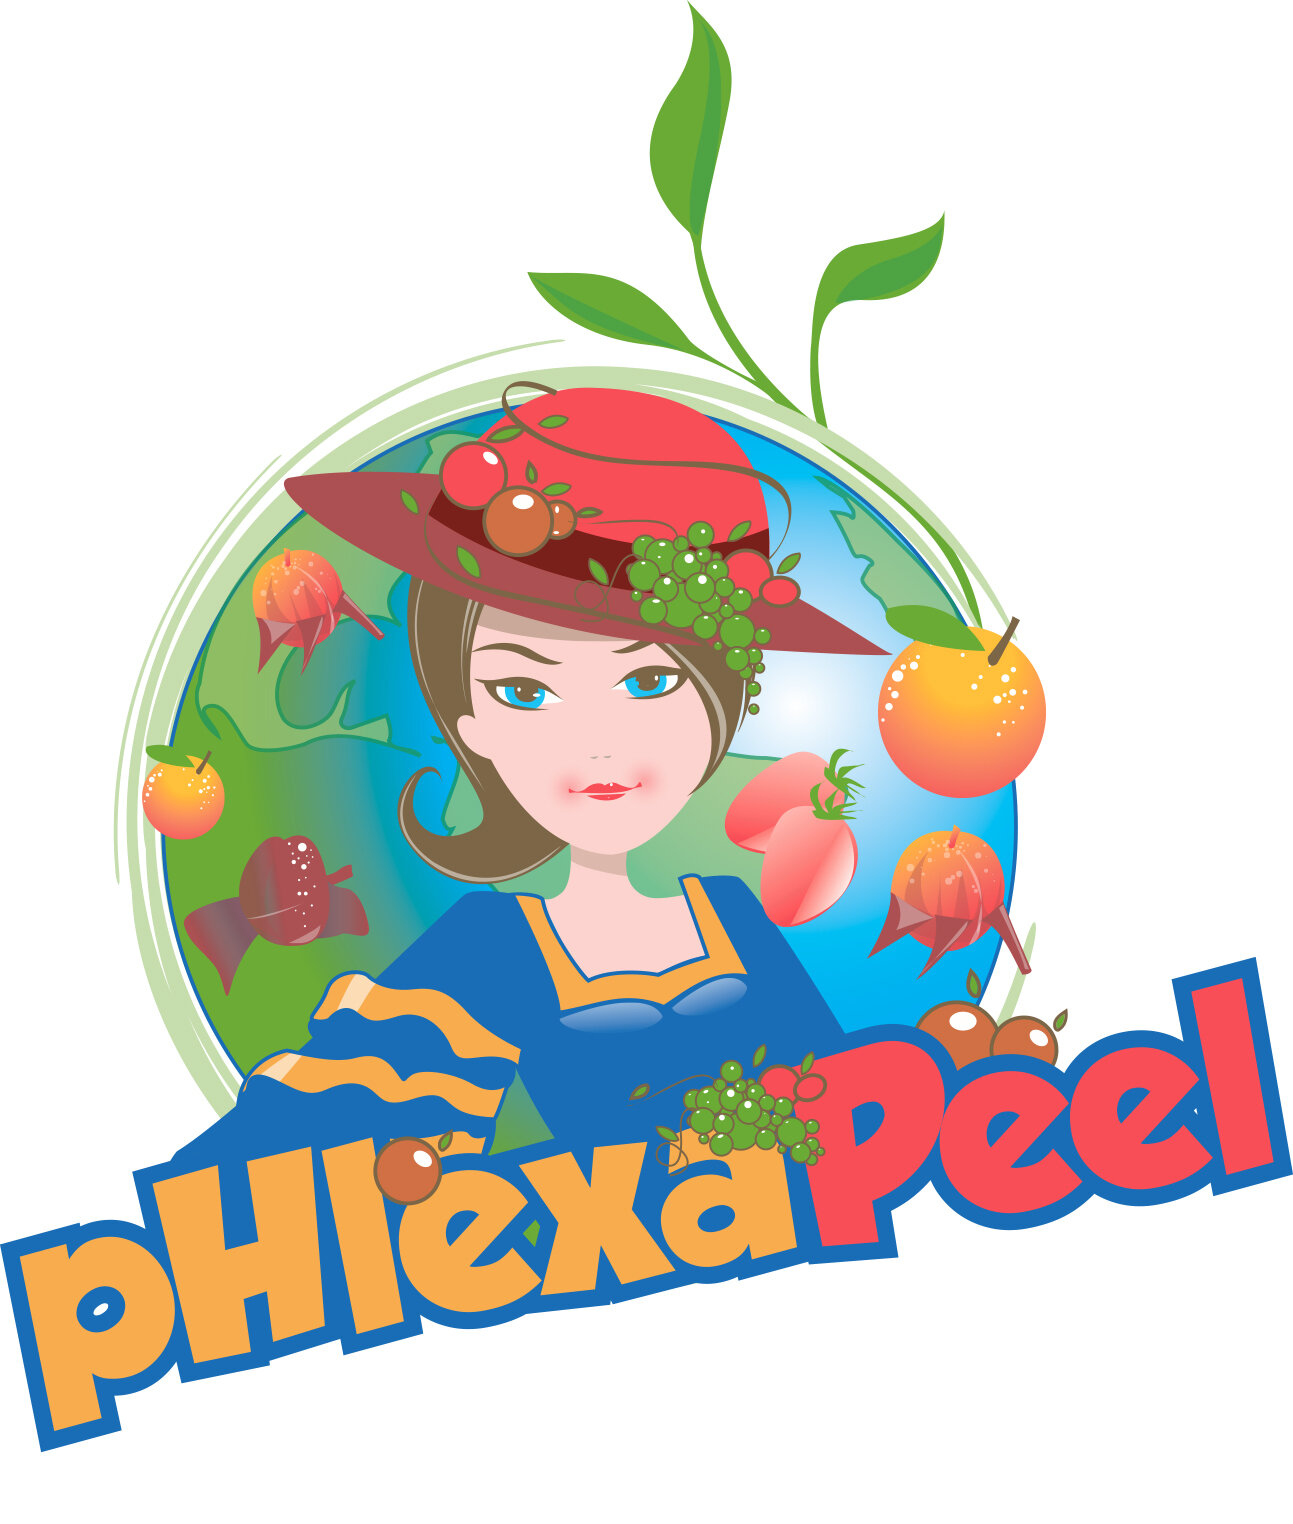 Phlexapeel